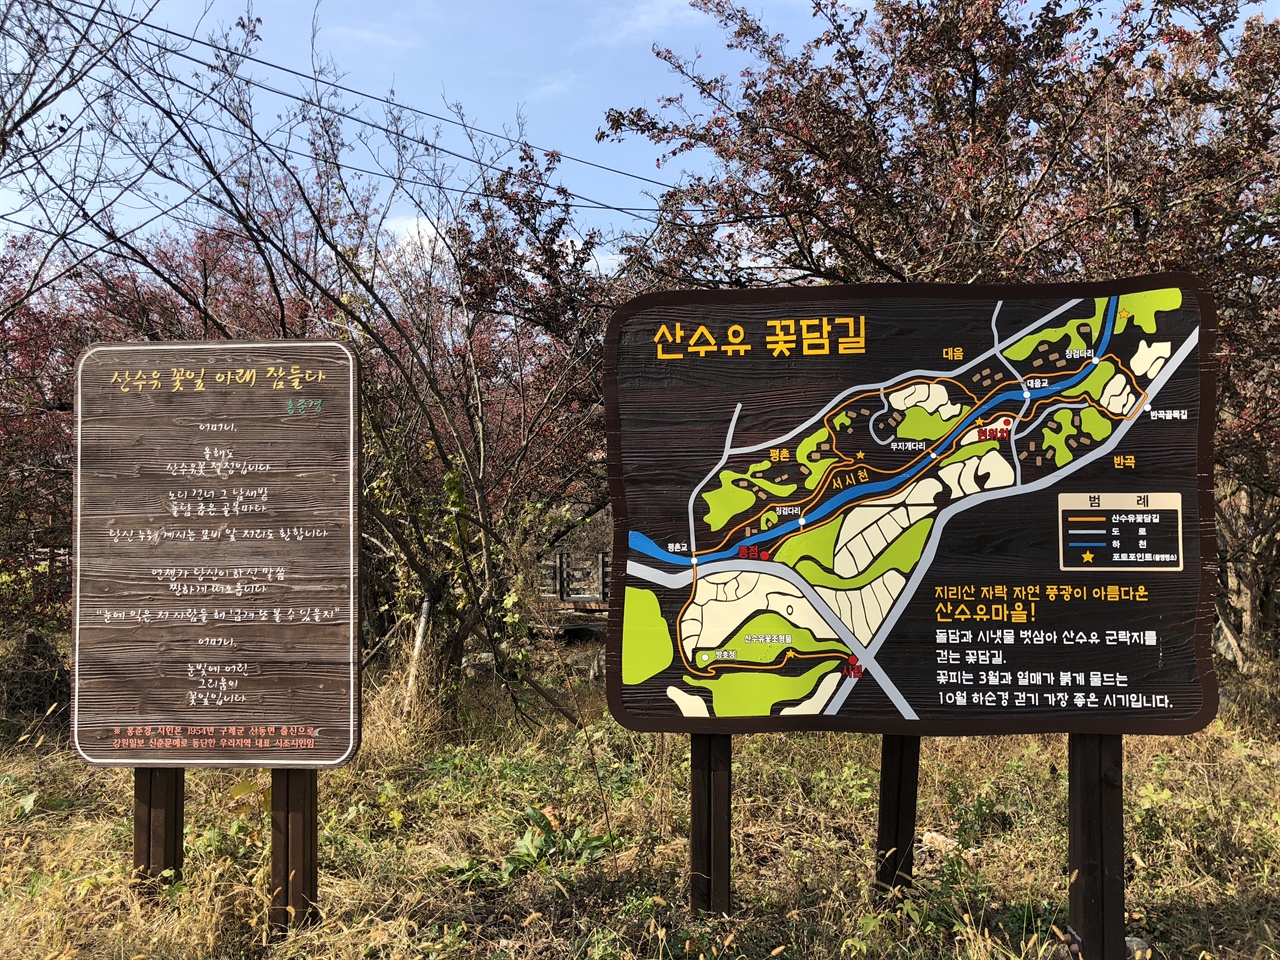 2014년 한국에서 가장 아름다운 마을 선정